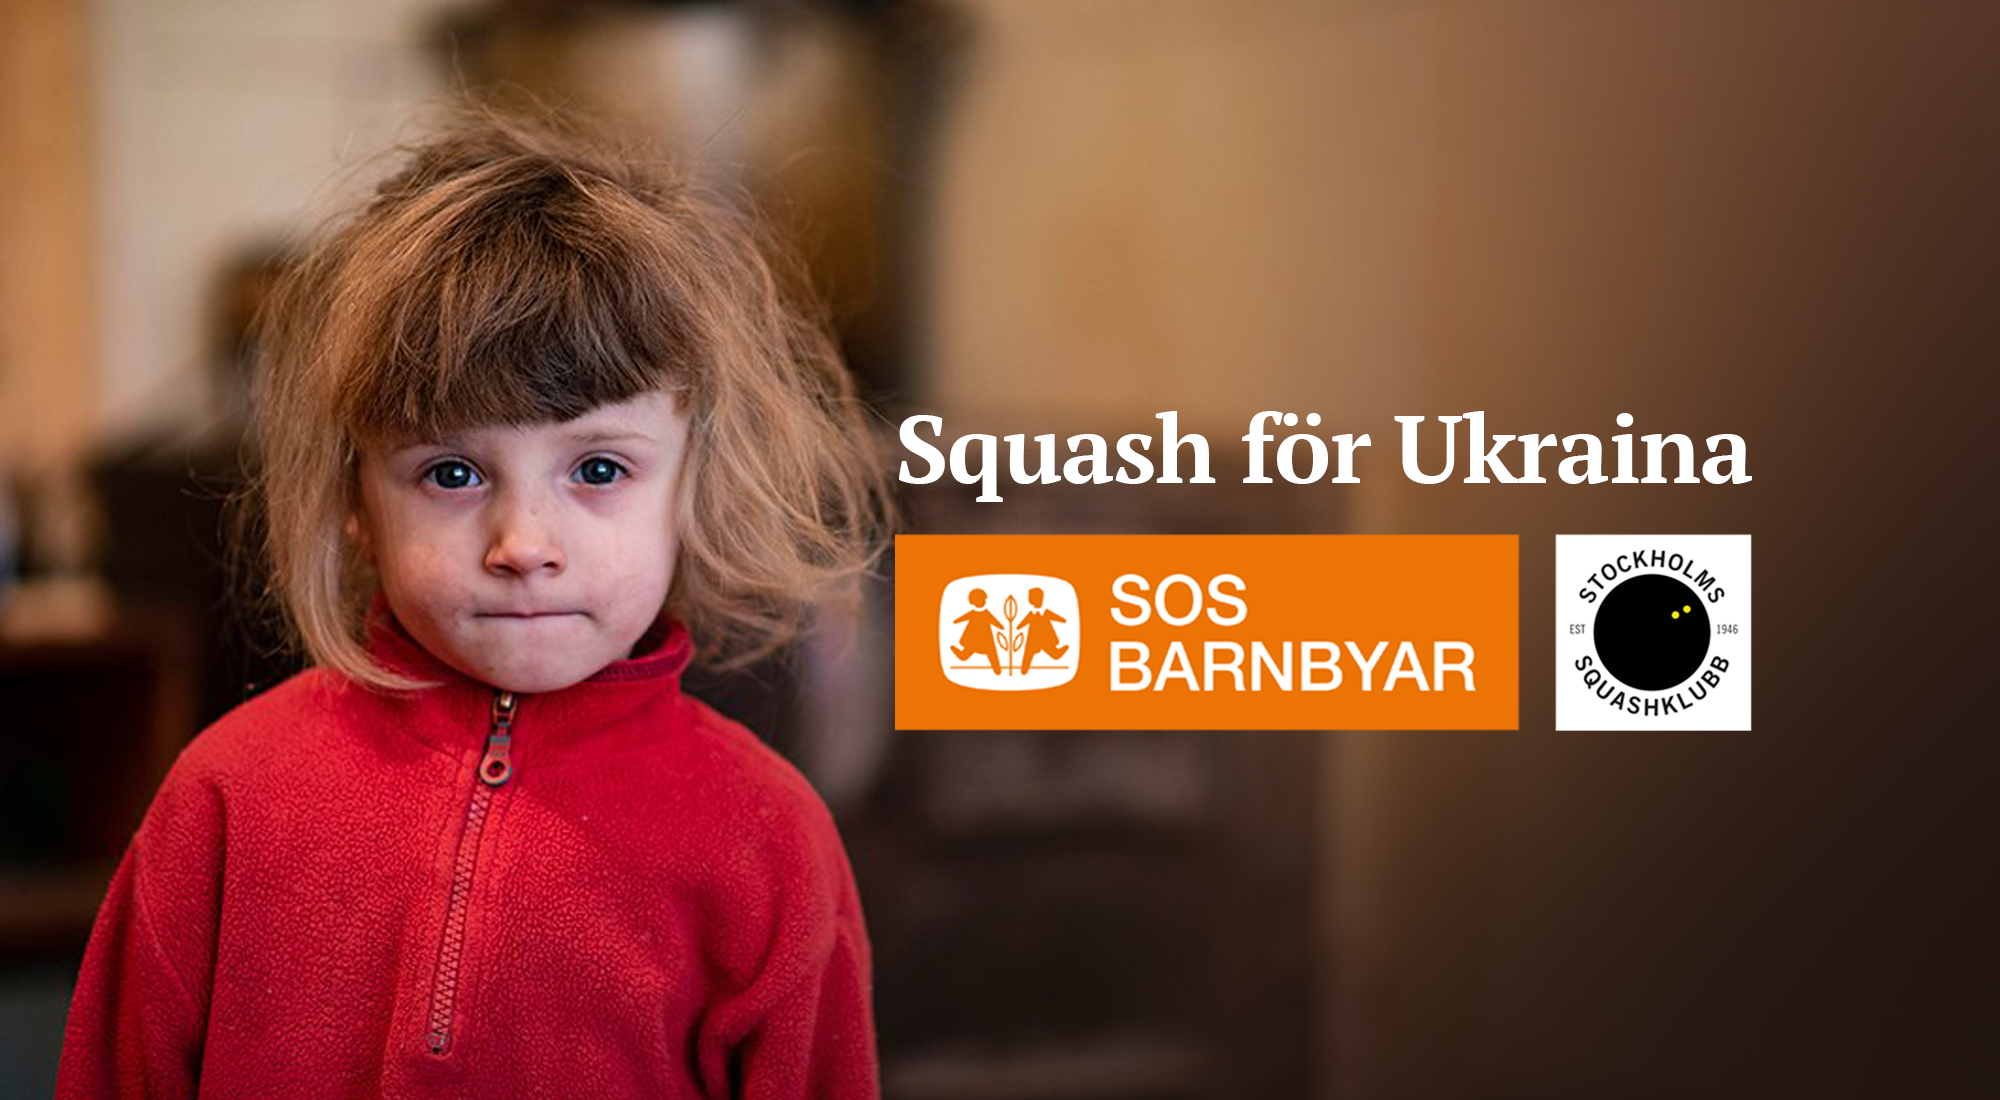 ssk_sos-barnbyar_squash-for-ukraina_2000x1100_swe.png